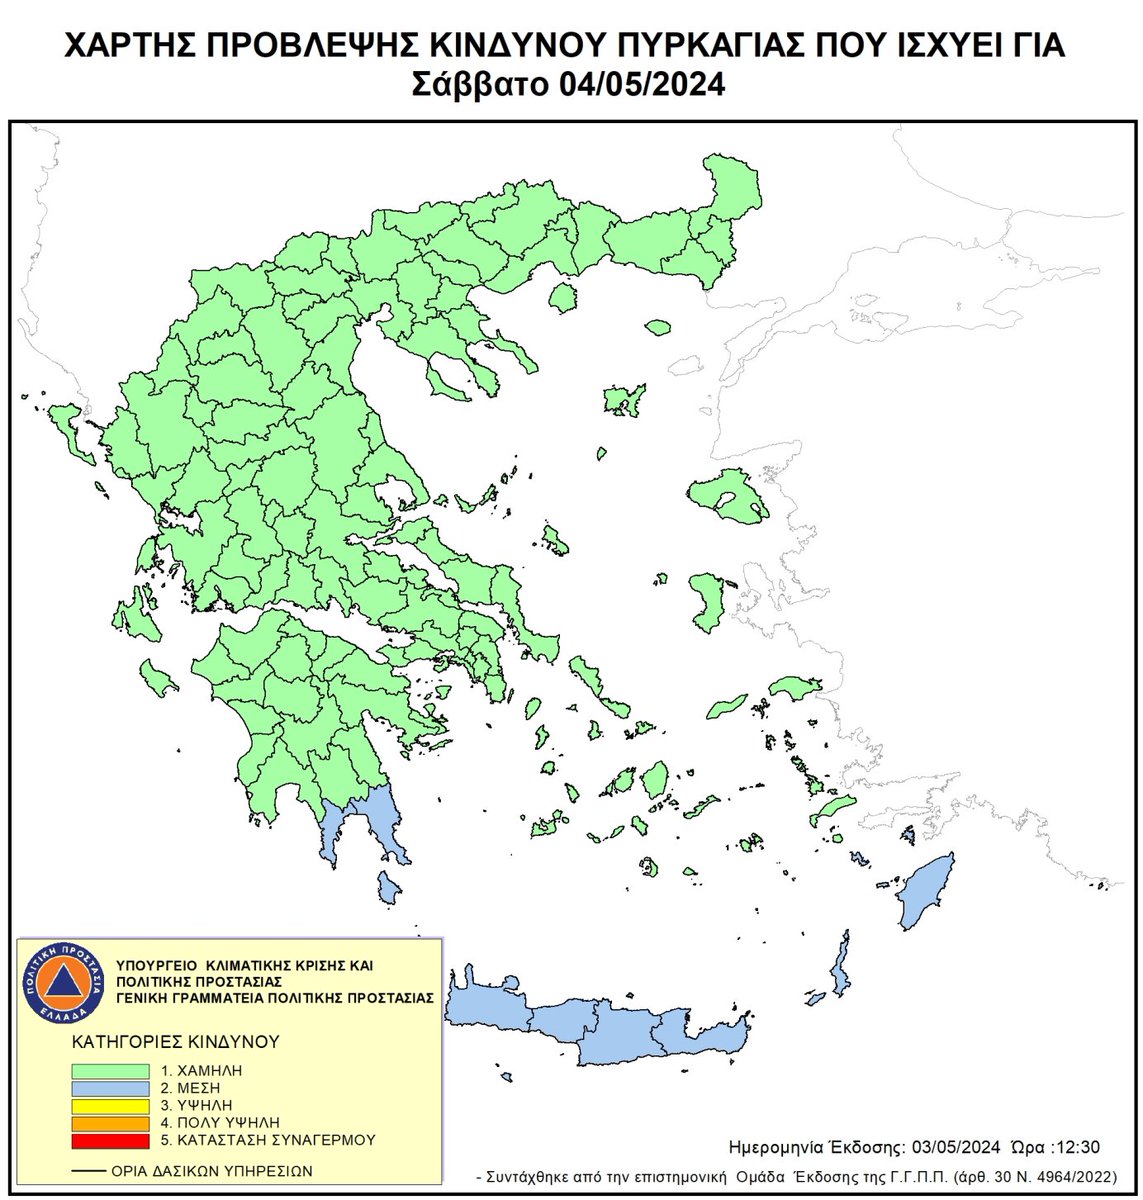 📌 Χάρτης Πρόβλεψης Κινδύνου Πυρκαγιάς 🔥 για αύριο 04/05

ℹ️ Οδηγίες προστασίας από δασικές πυρκαγιές 👉  bit.ly/3fVPyXt

@pyrosvestiki

@112Greece

@hellenicpolice